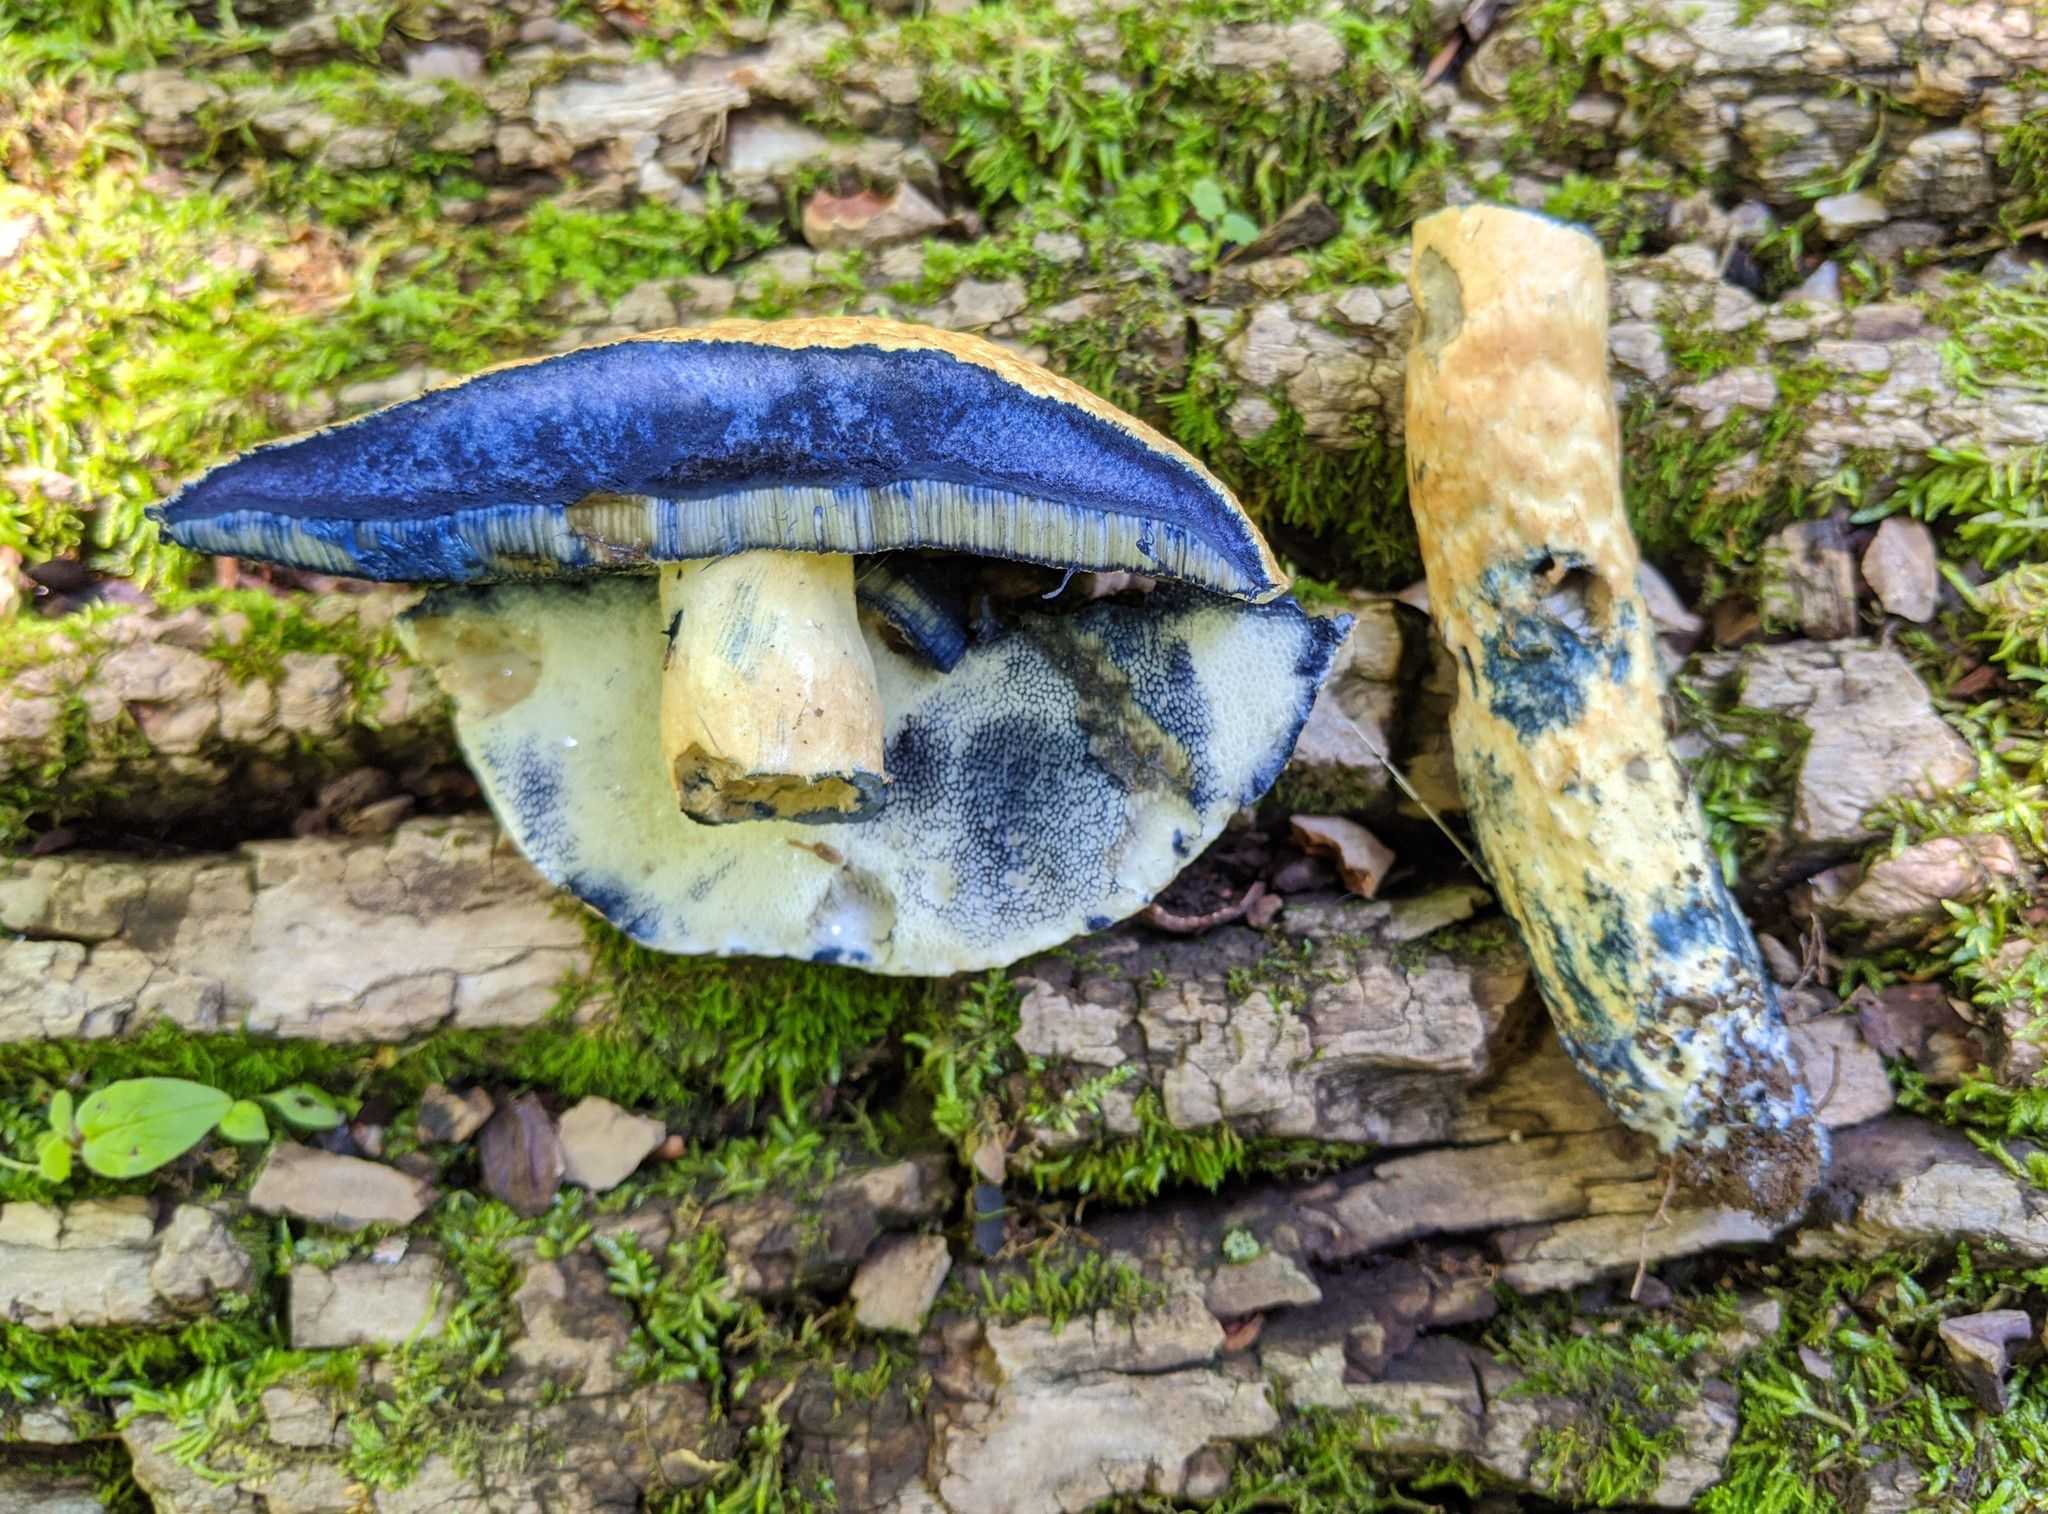 Можно ли есть грибы, похожие на белые, но синеющие на срезе